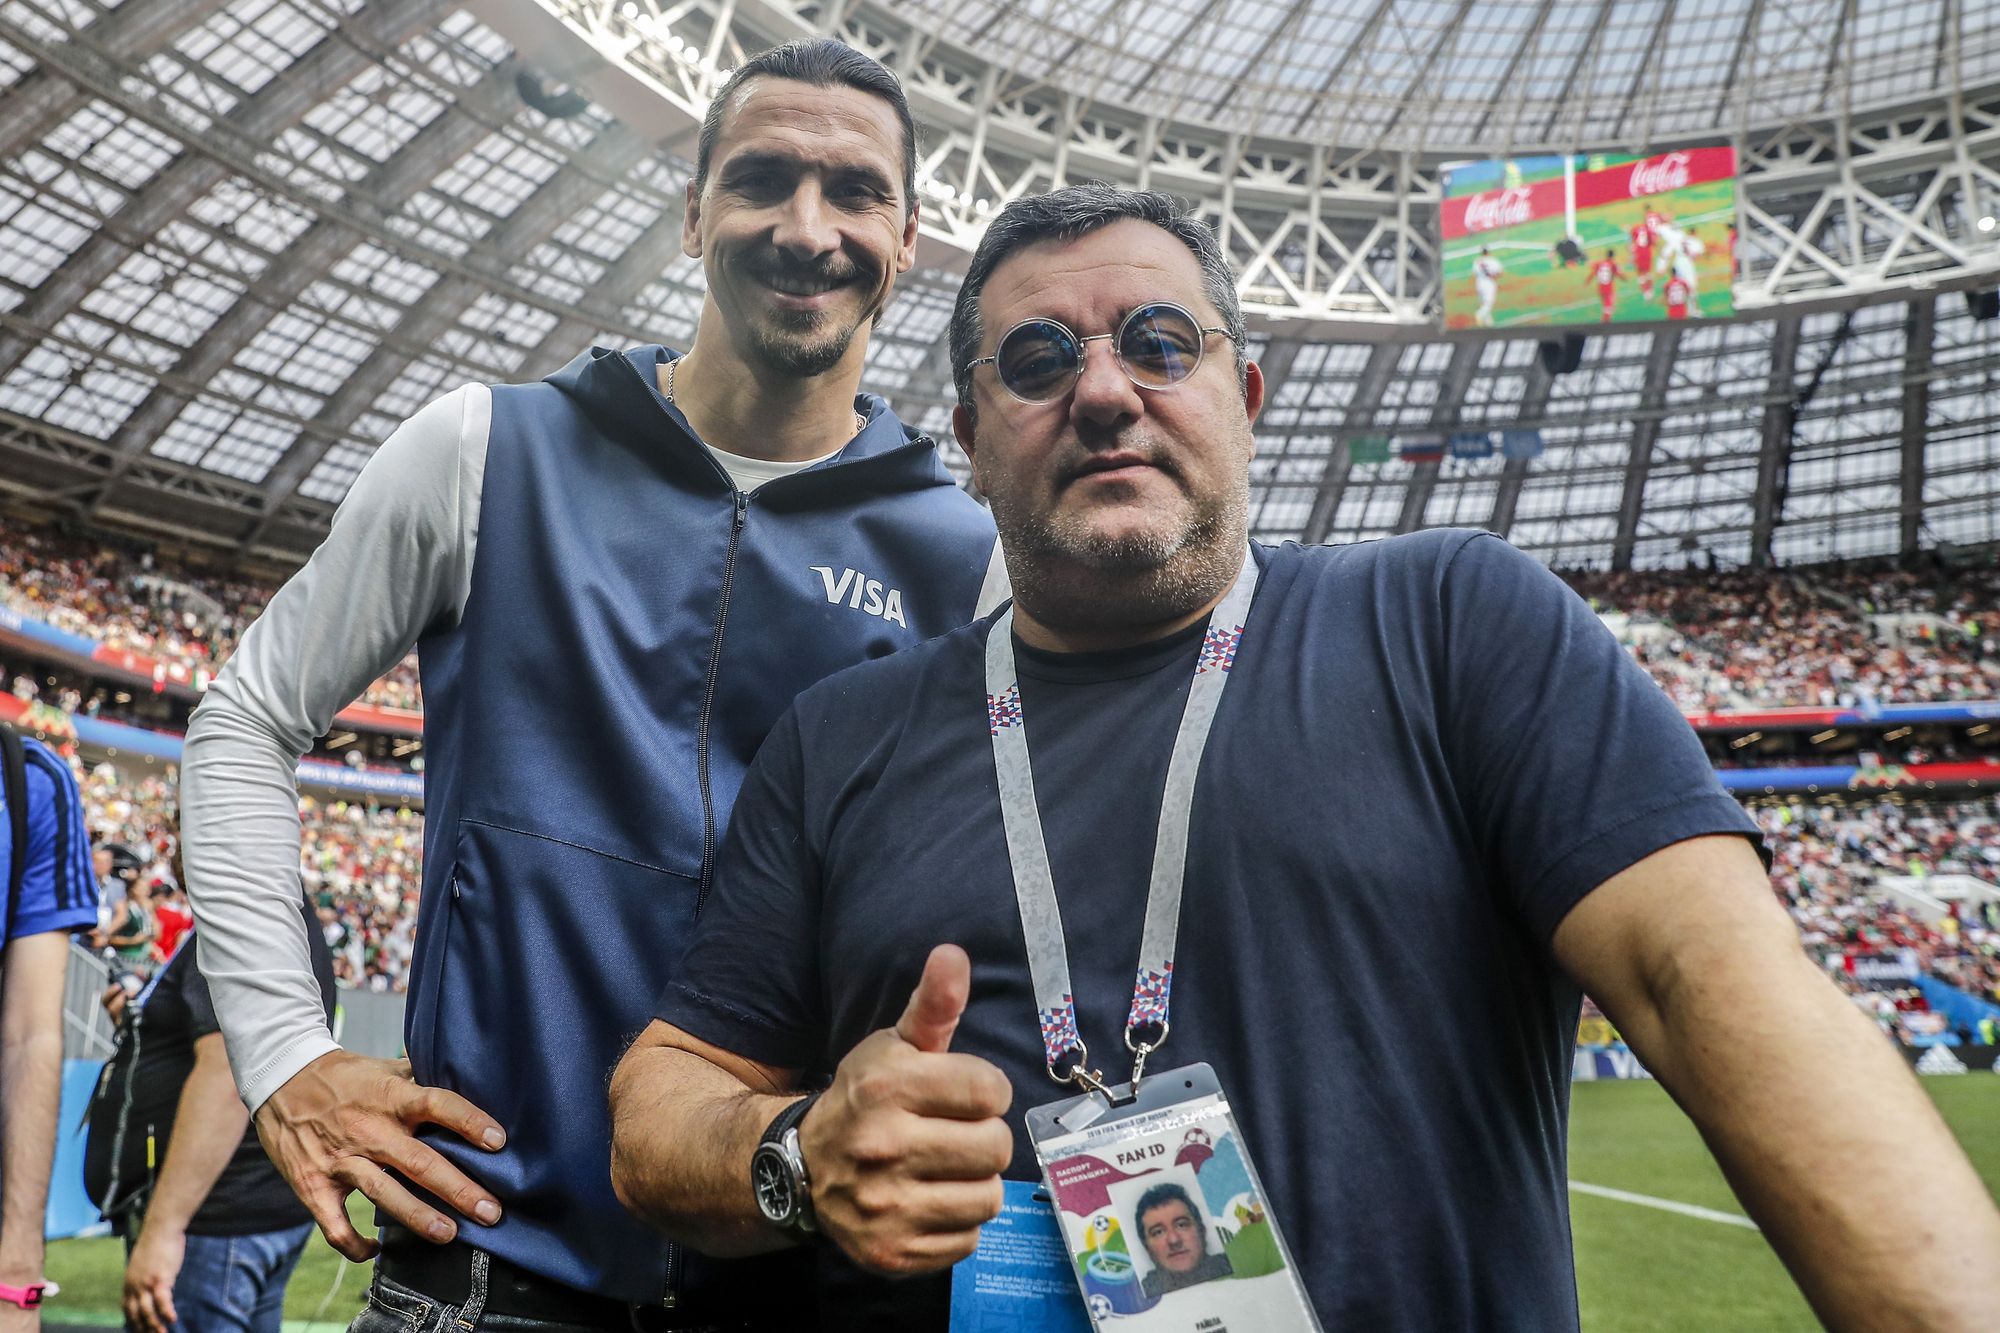 Mino Raiola a szülei pizzázójából világhírű játékosügynökké nőtte ki magát, ő képviseli Zlatan Ibrahimovicot is/Getty Images